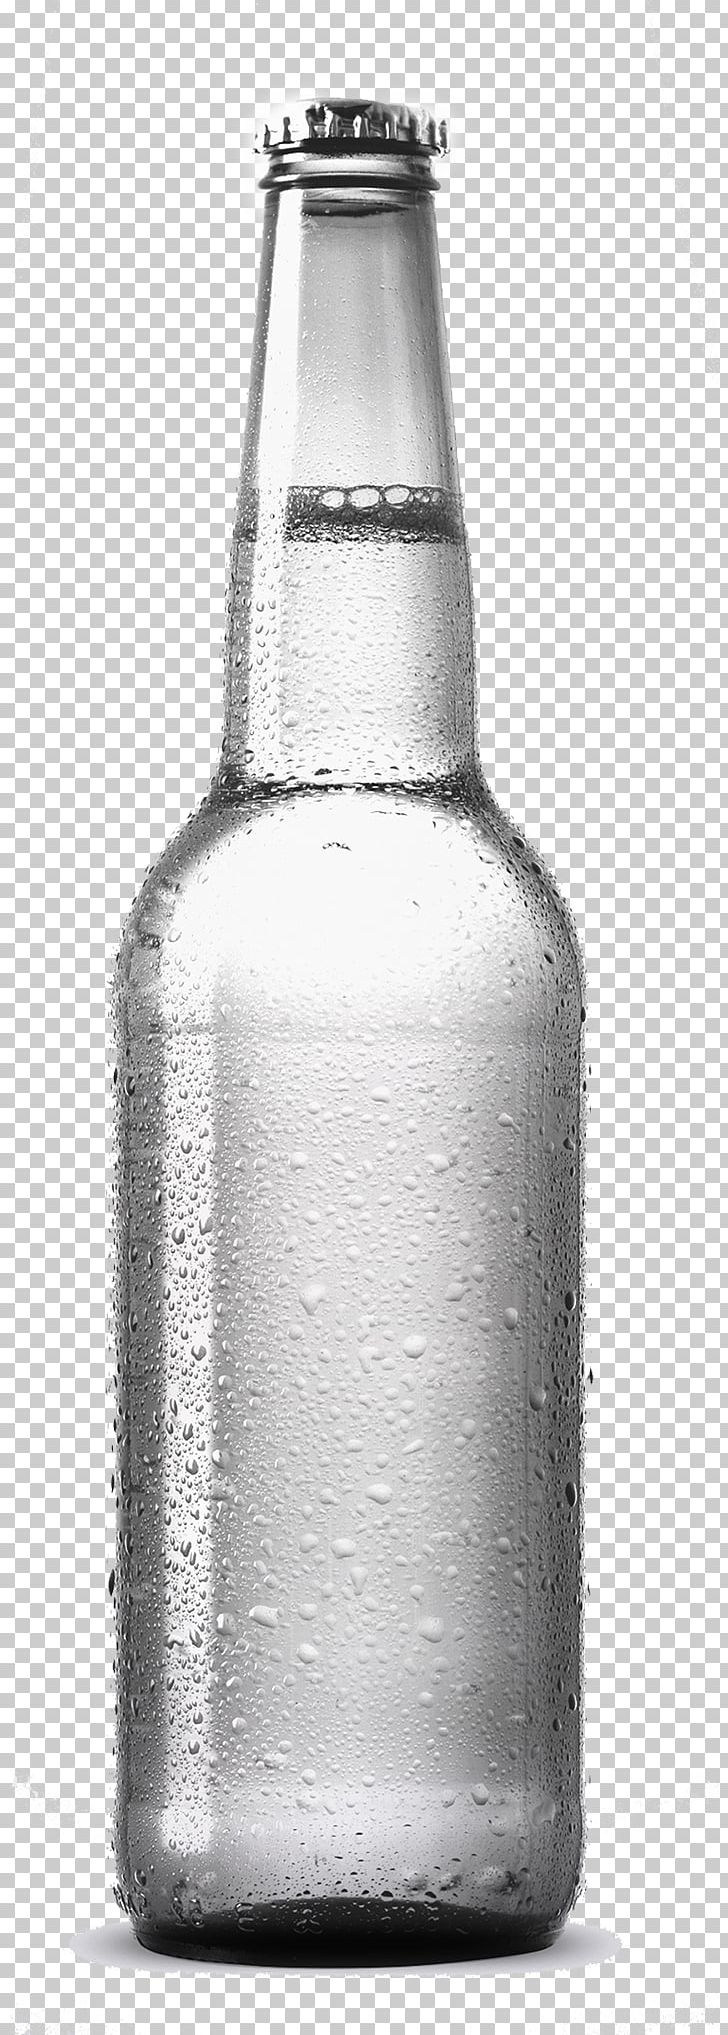 Inca Kola Soft Drink Coca-Cola Bottle PNG, Clipart, Beer Bottle, Black, Black And White, Bottles, Cocacola Free PNG Download